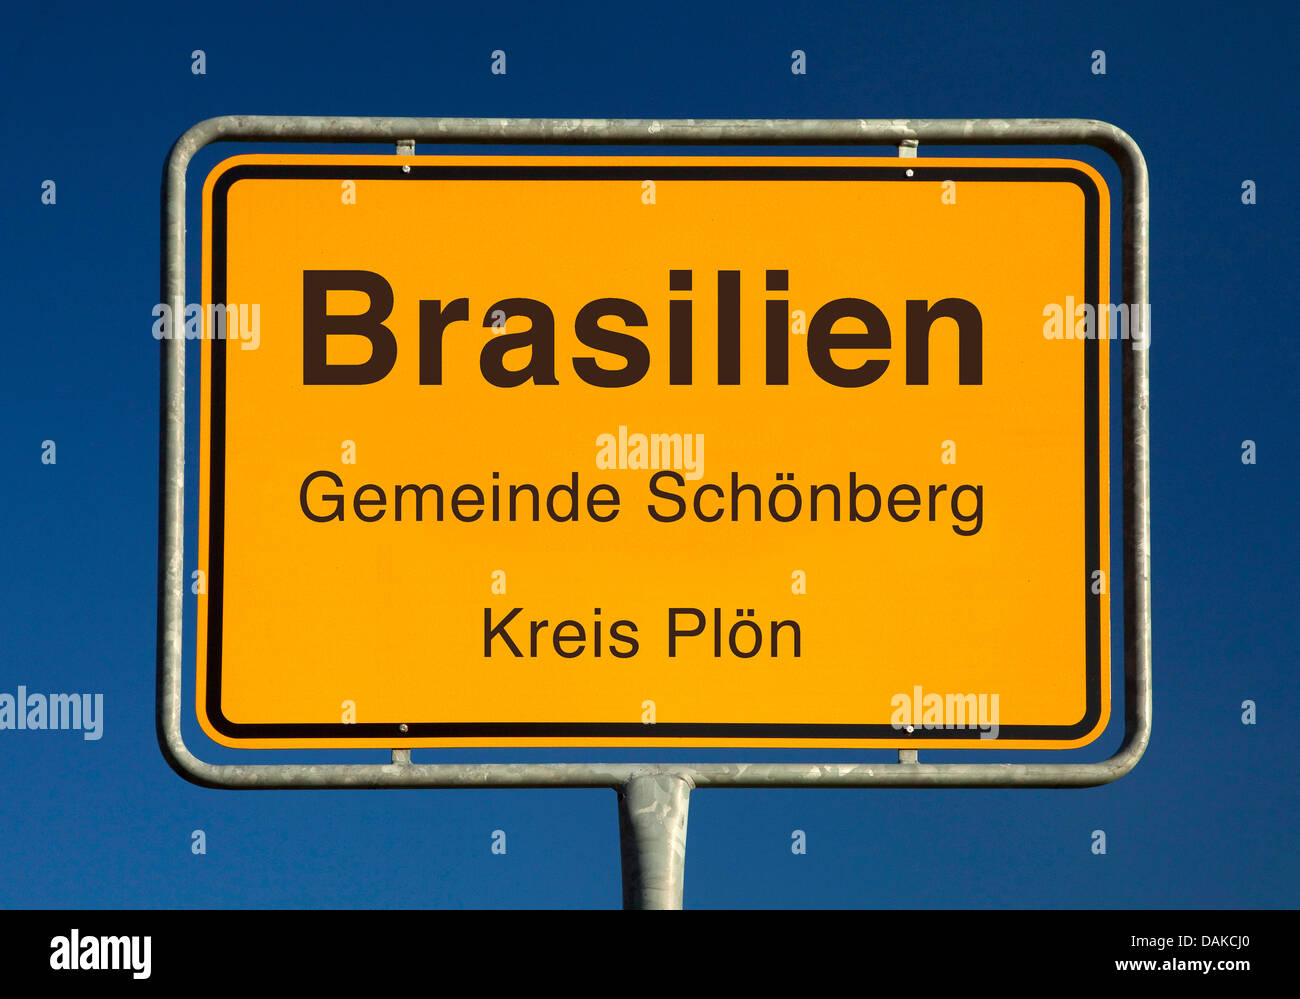 Brasilien place name sign, Germany, Schleswig-Holstein, Kreis Ploen, Brasilien Stock Photo